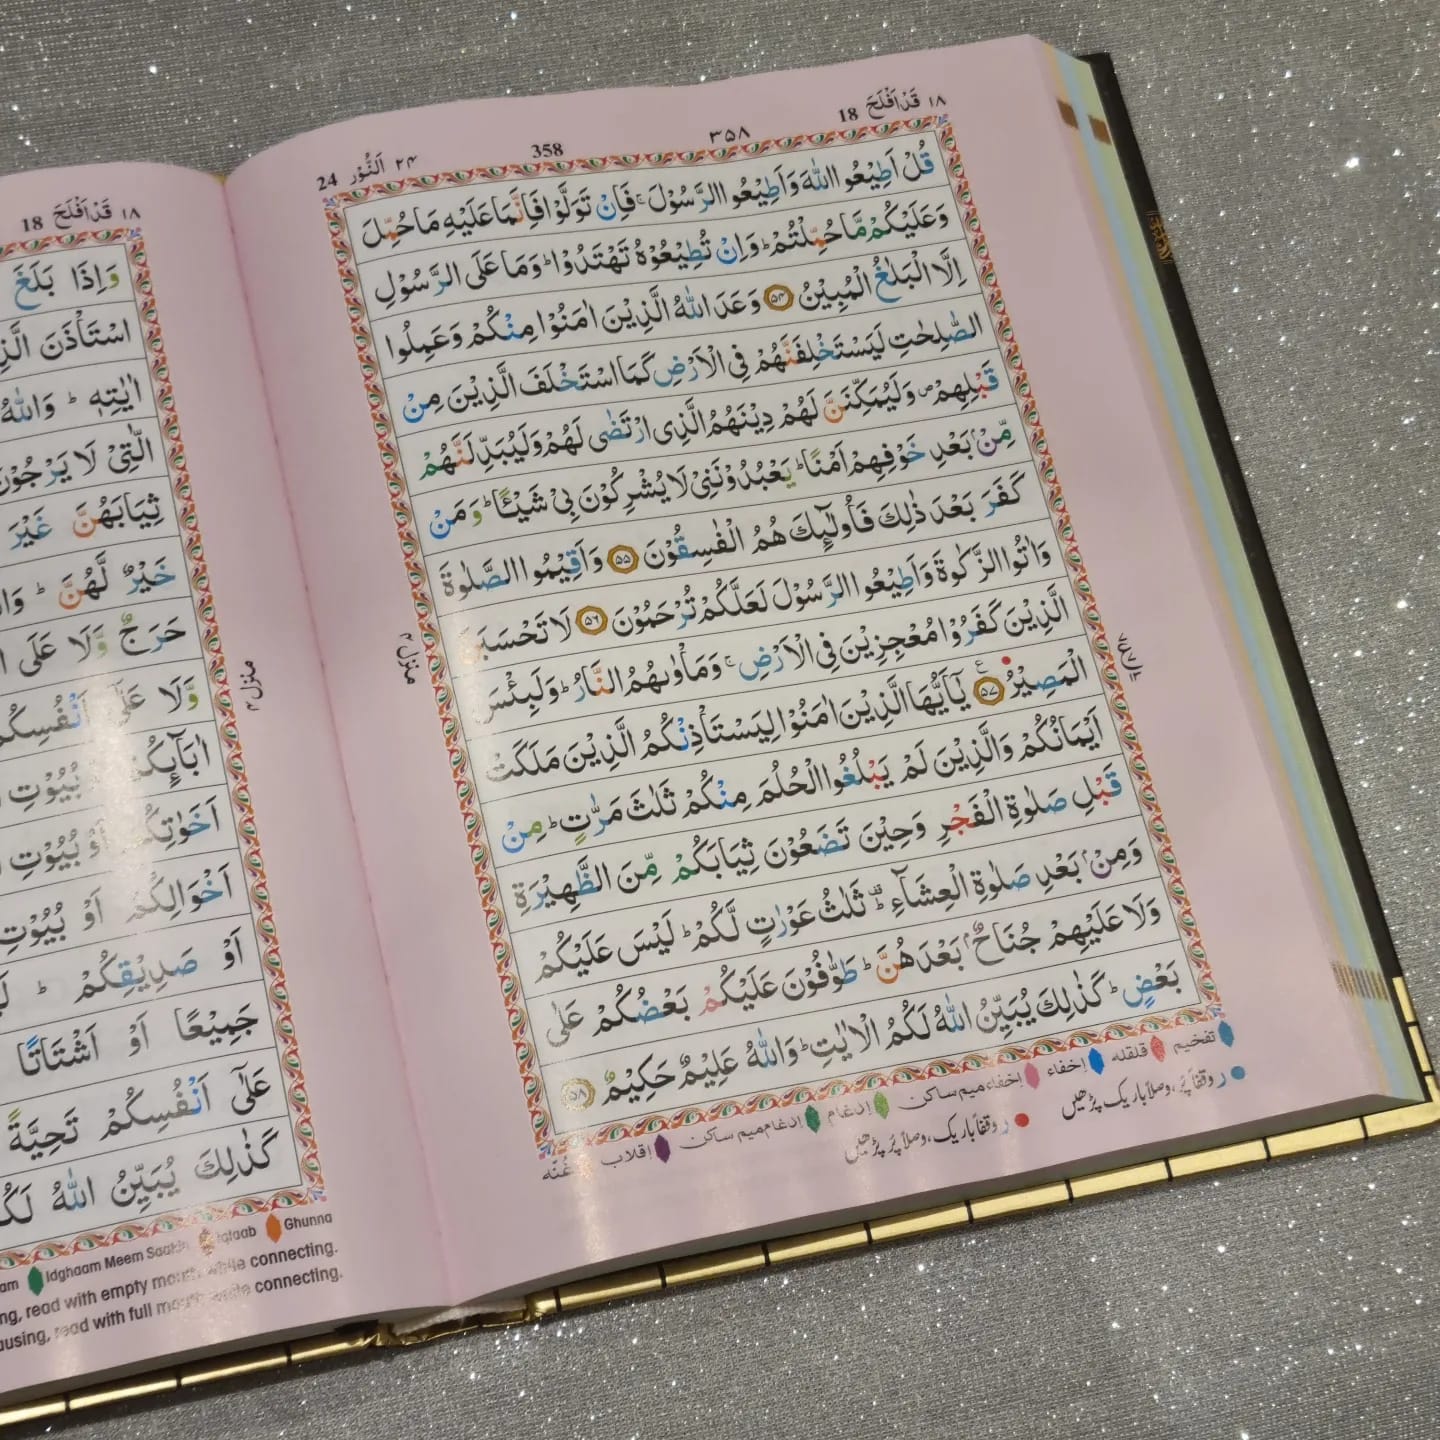 I-Quran B6 enesembozo se-Kaaba kanye nemithetho ye-Tajweed enekhodi kanye namakhasi othingo 